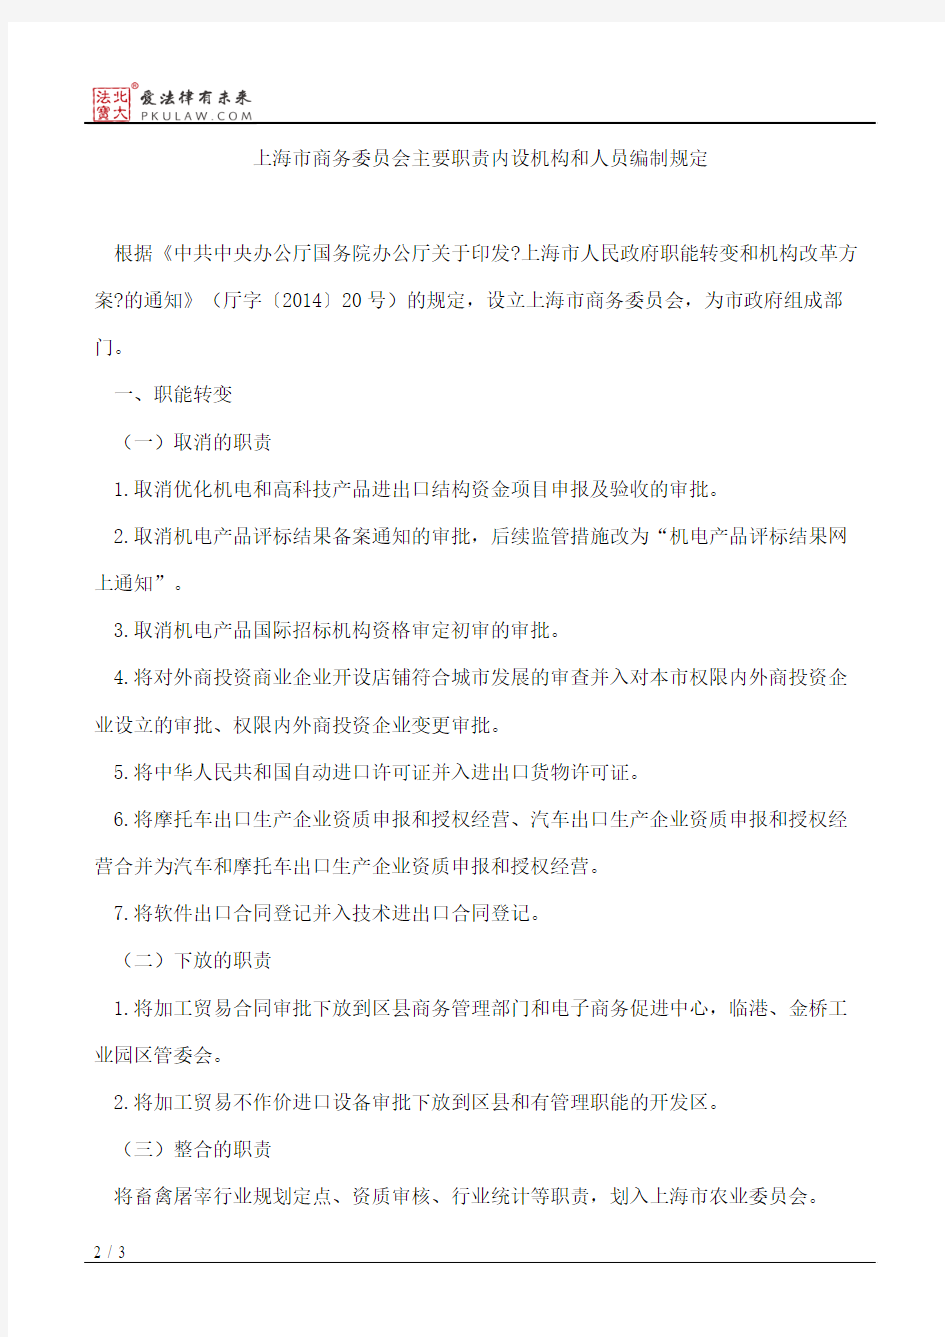 上海市人民政府办公厅关于印发上海市商务委员会主要职责内设机构